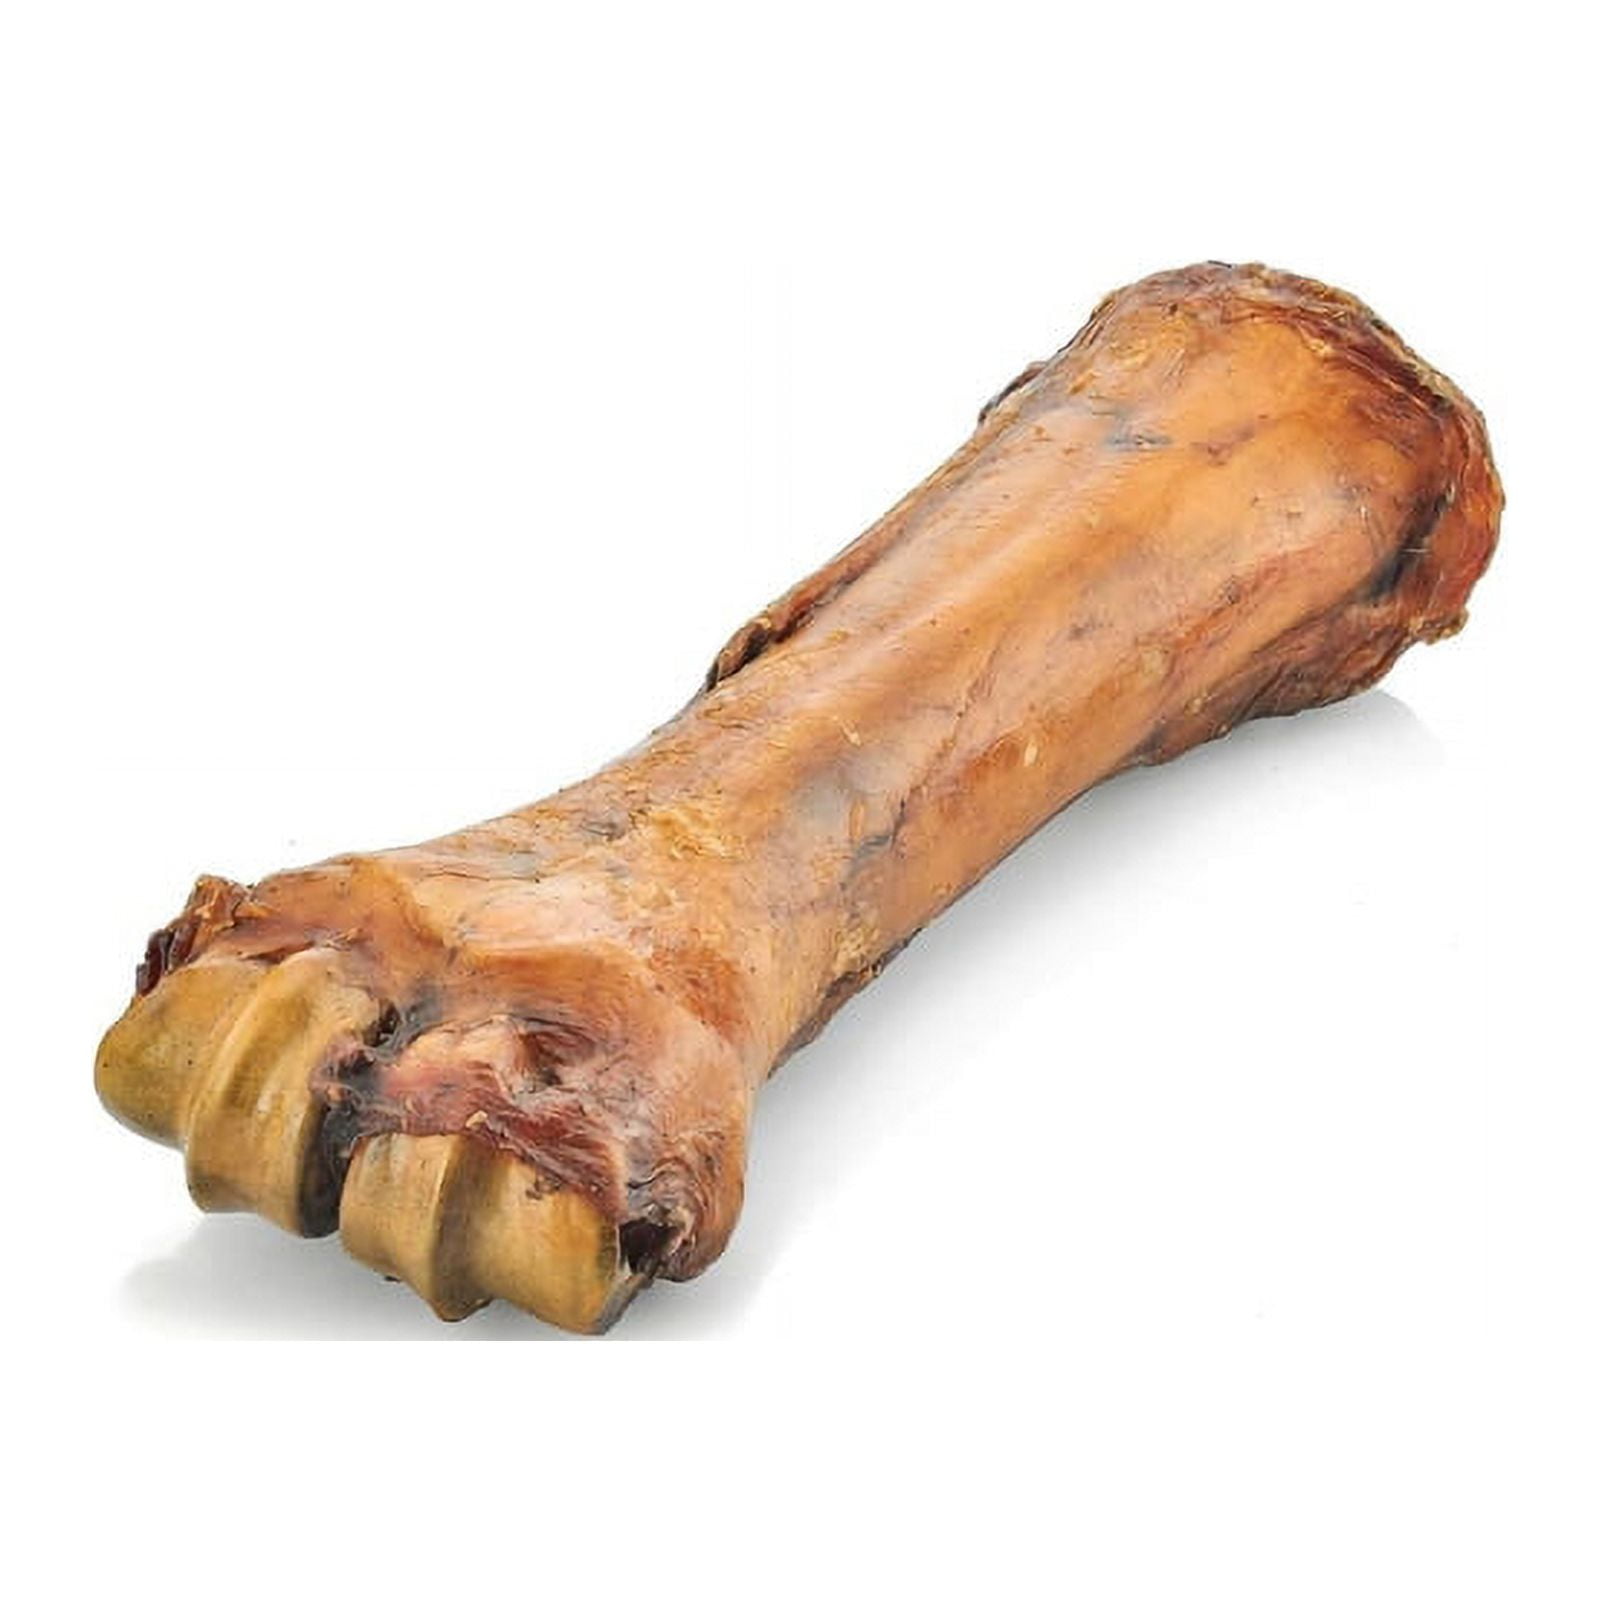 Savory Prime Beef Shin Bone For Dogs 1.2 lb 1 pk